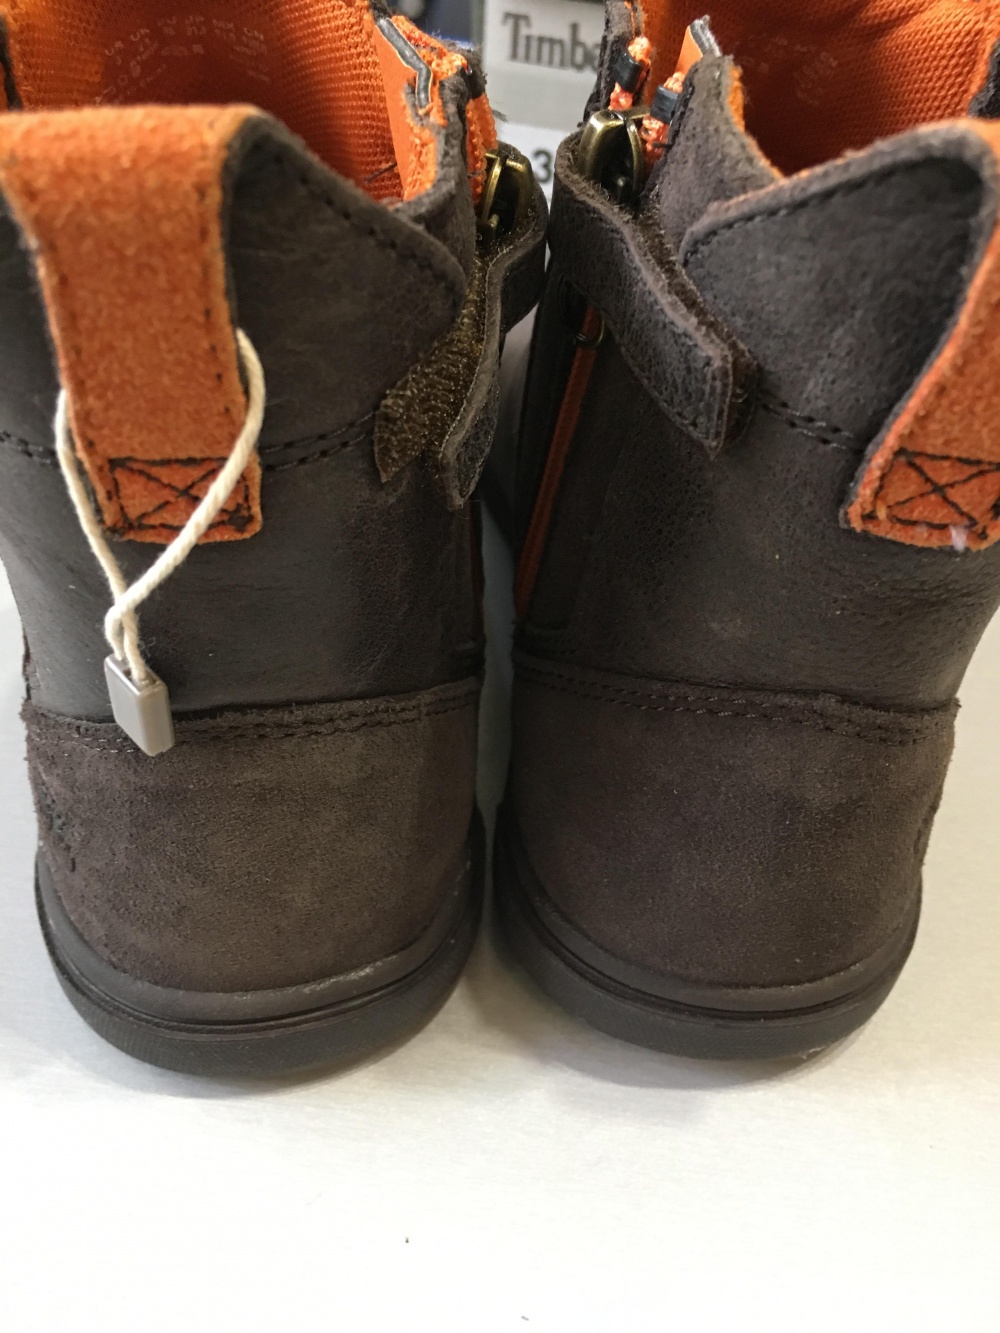 Ботинки  Timberland, размер 35. По стельке 22,5 см